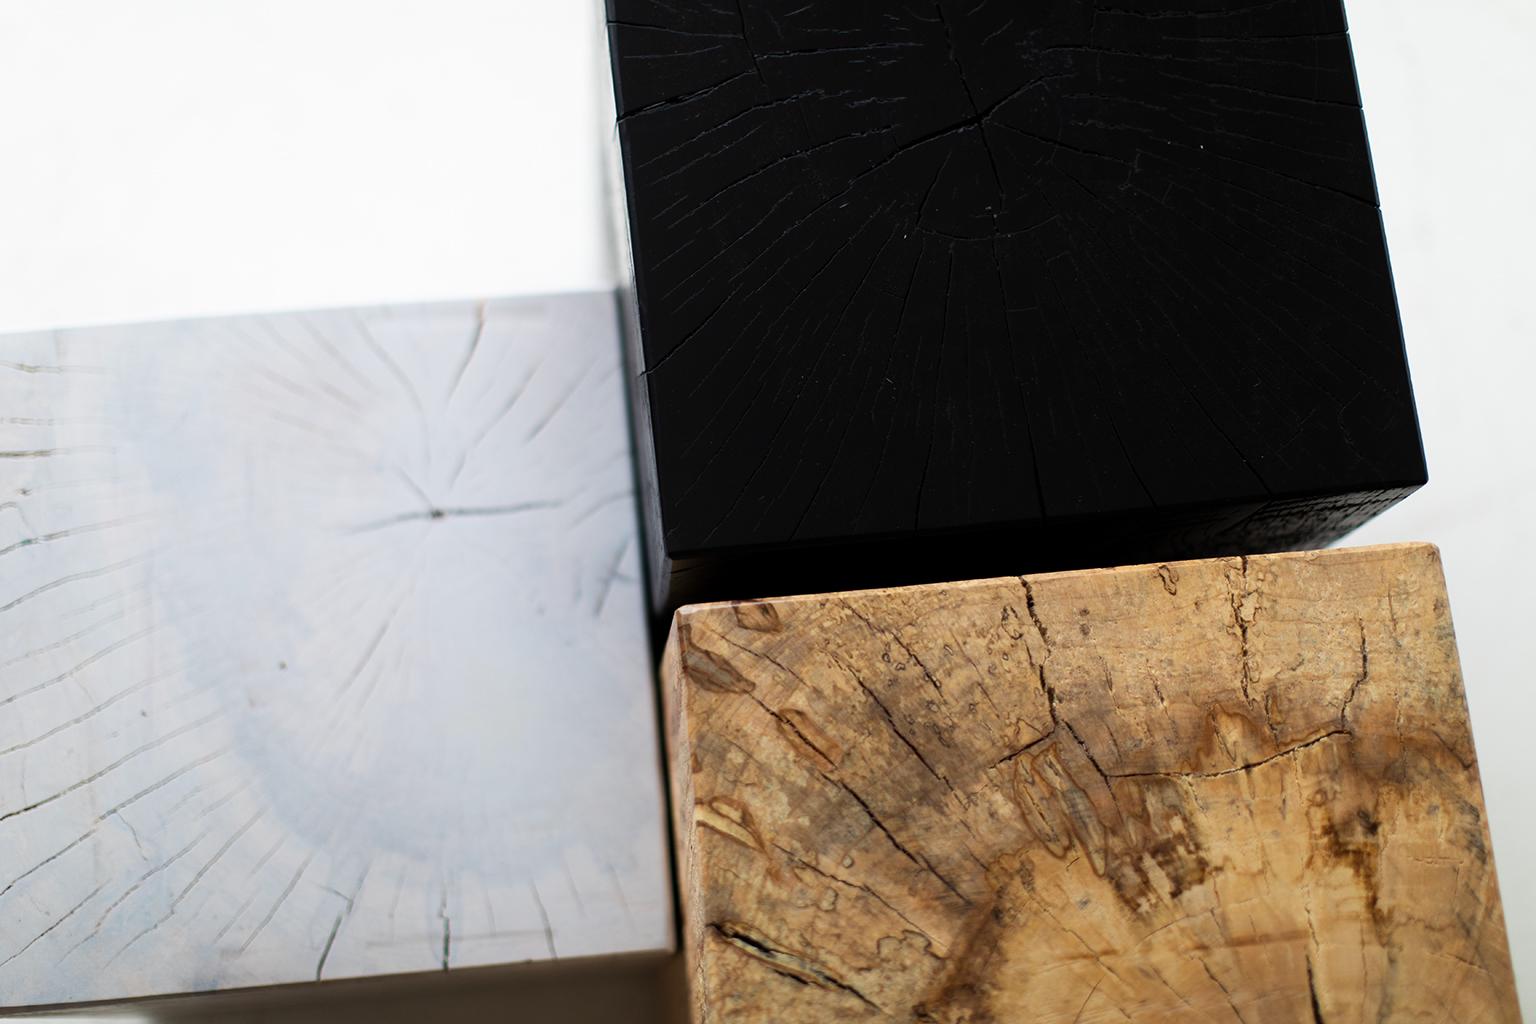 Tables d'appoint en bois Bertu, Tables d'appoint carrées en bois blanc noir naturel

Veuillez faire défiler la page vers le bas pour lire les INSTRUCTIONS IMPORTANTES SUR NOS STUMPS avant d'acheter !

Veuillez préciser si vous souhaitez du noir, du